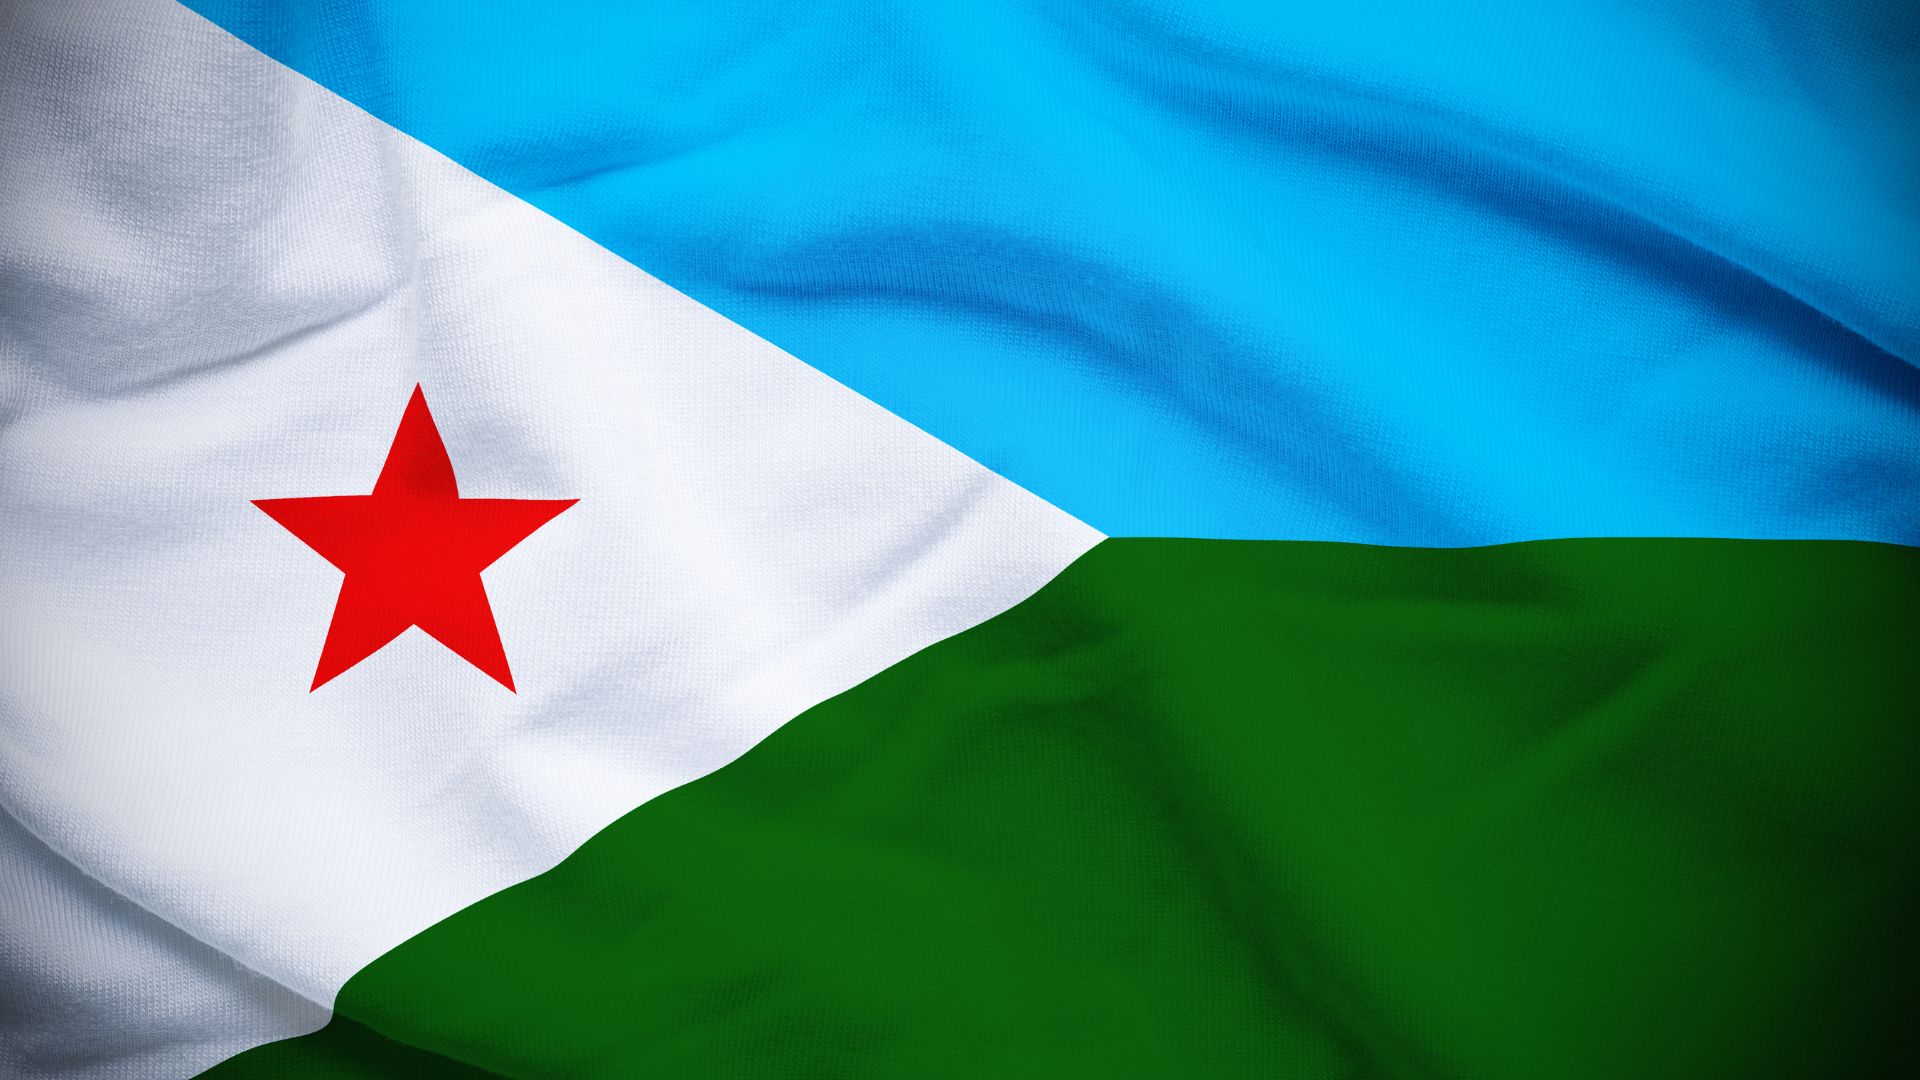 A bandeira contém duas listas horizontais nas cores de azul e verde, com um triângulo isósceles branco, com uma estrela vermelha de cinco pontas no centro.